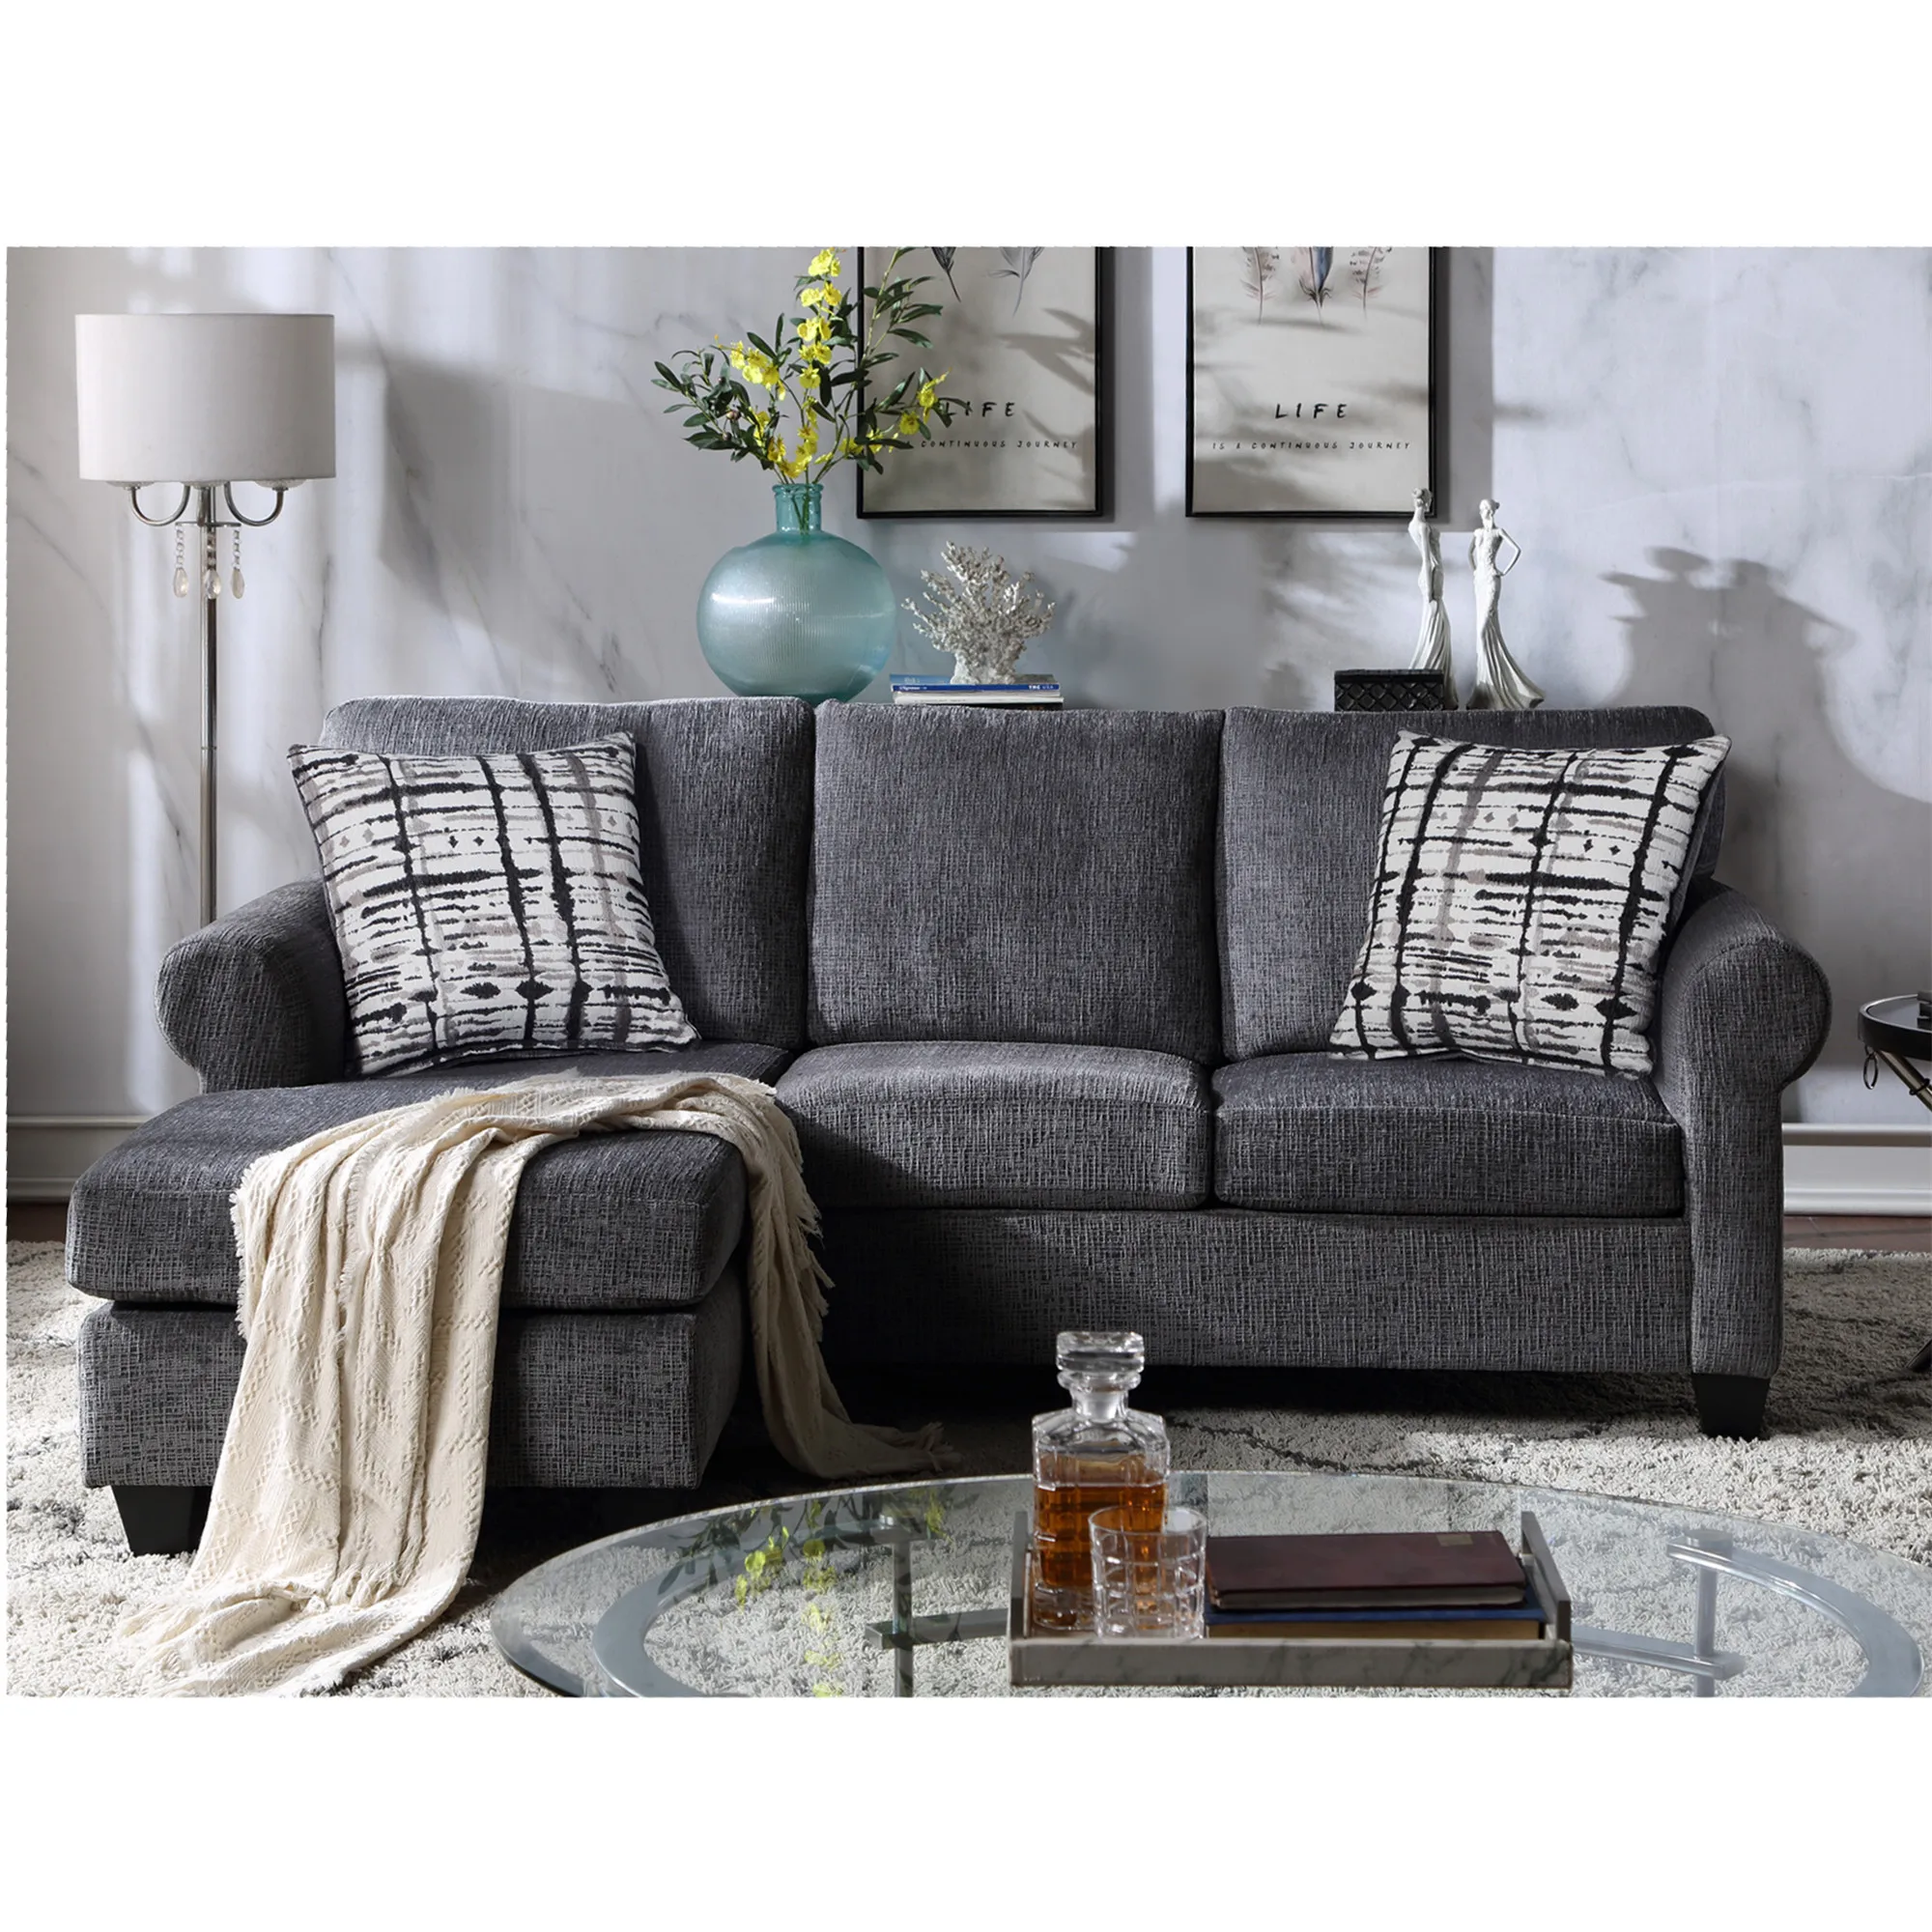 

Секционный диван-трансформер с двумя подушками, L-образный 3-местный диван с мягкой обивкой, Современная льняная ткань, компактное и простое ...